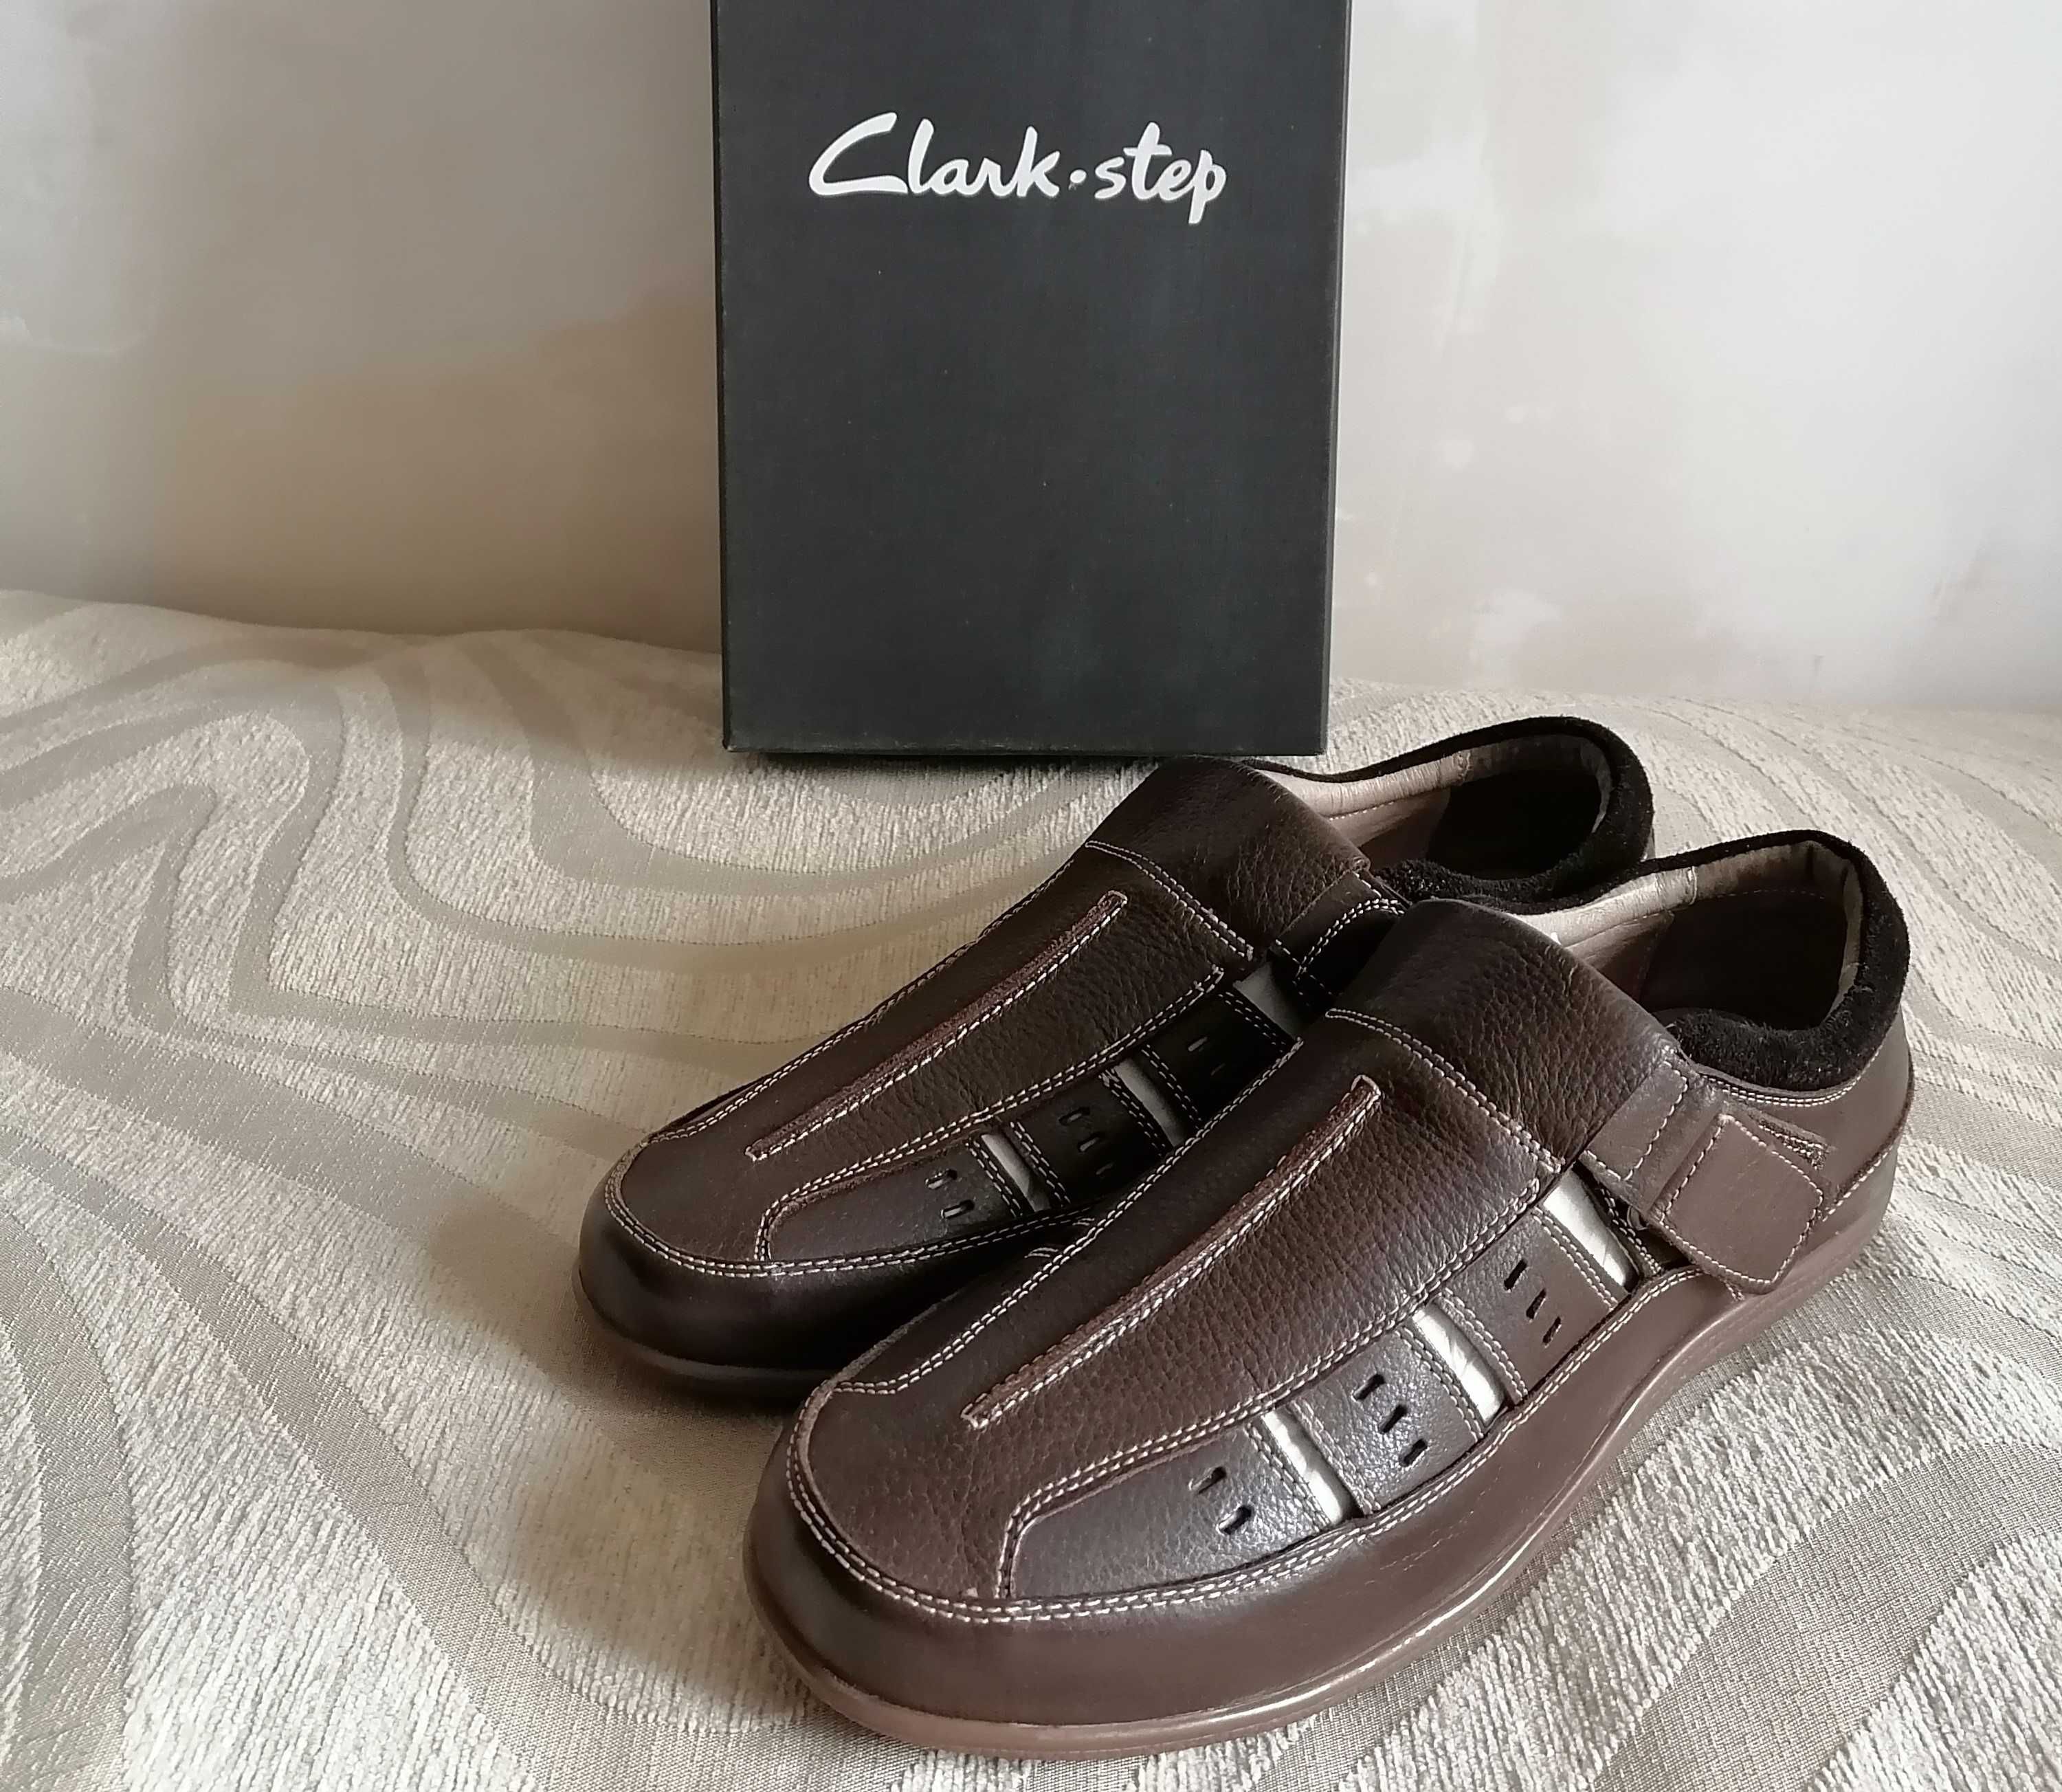 Clark step/разм-41/НОВЫЕ сандалии, туфли, мокасины, кроссовки, ботинки